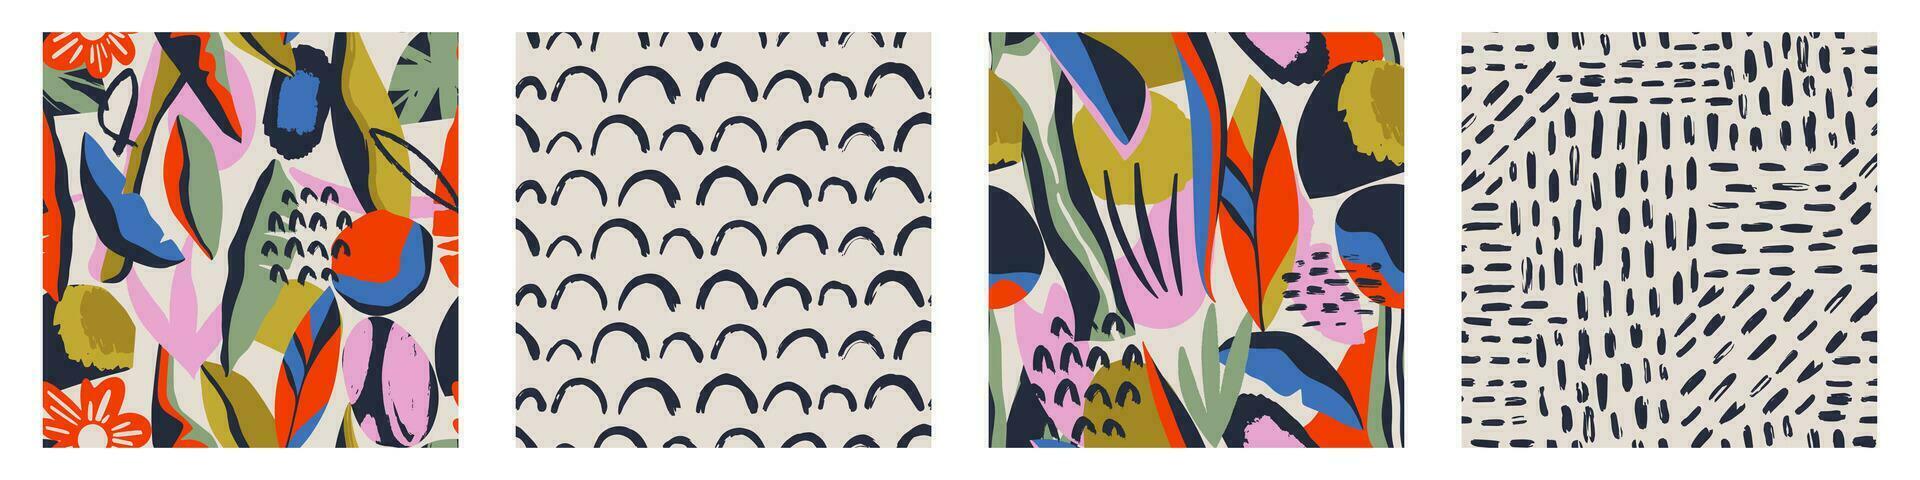 conjunto de patrones sin fisuras contemporáneos abstractos con formas dibujadas a mano, manchas, puntos y líneas con texturas. estampado bohemio vibrante. Ilustración de vector de collage moderno